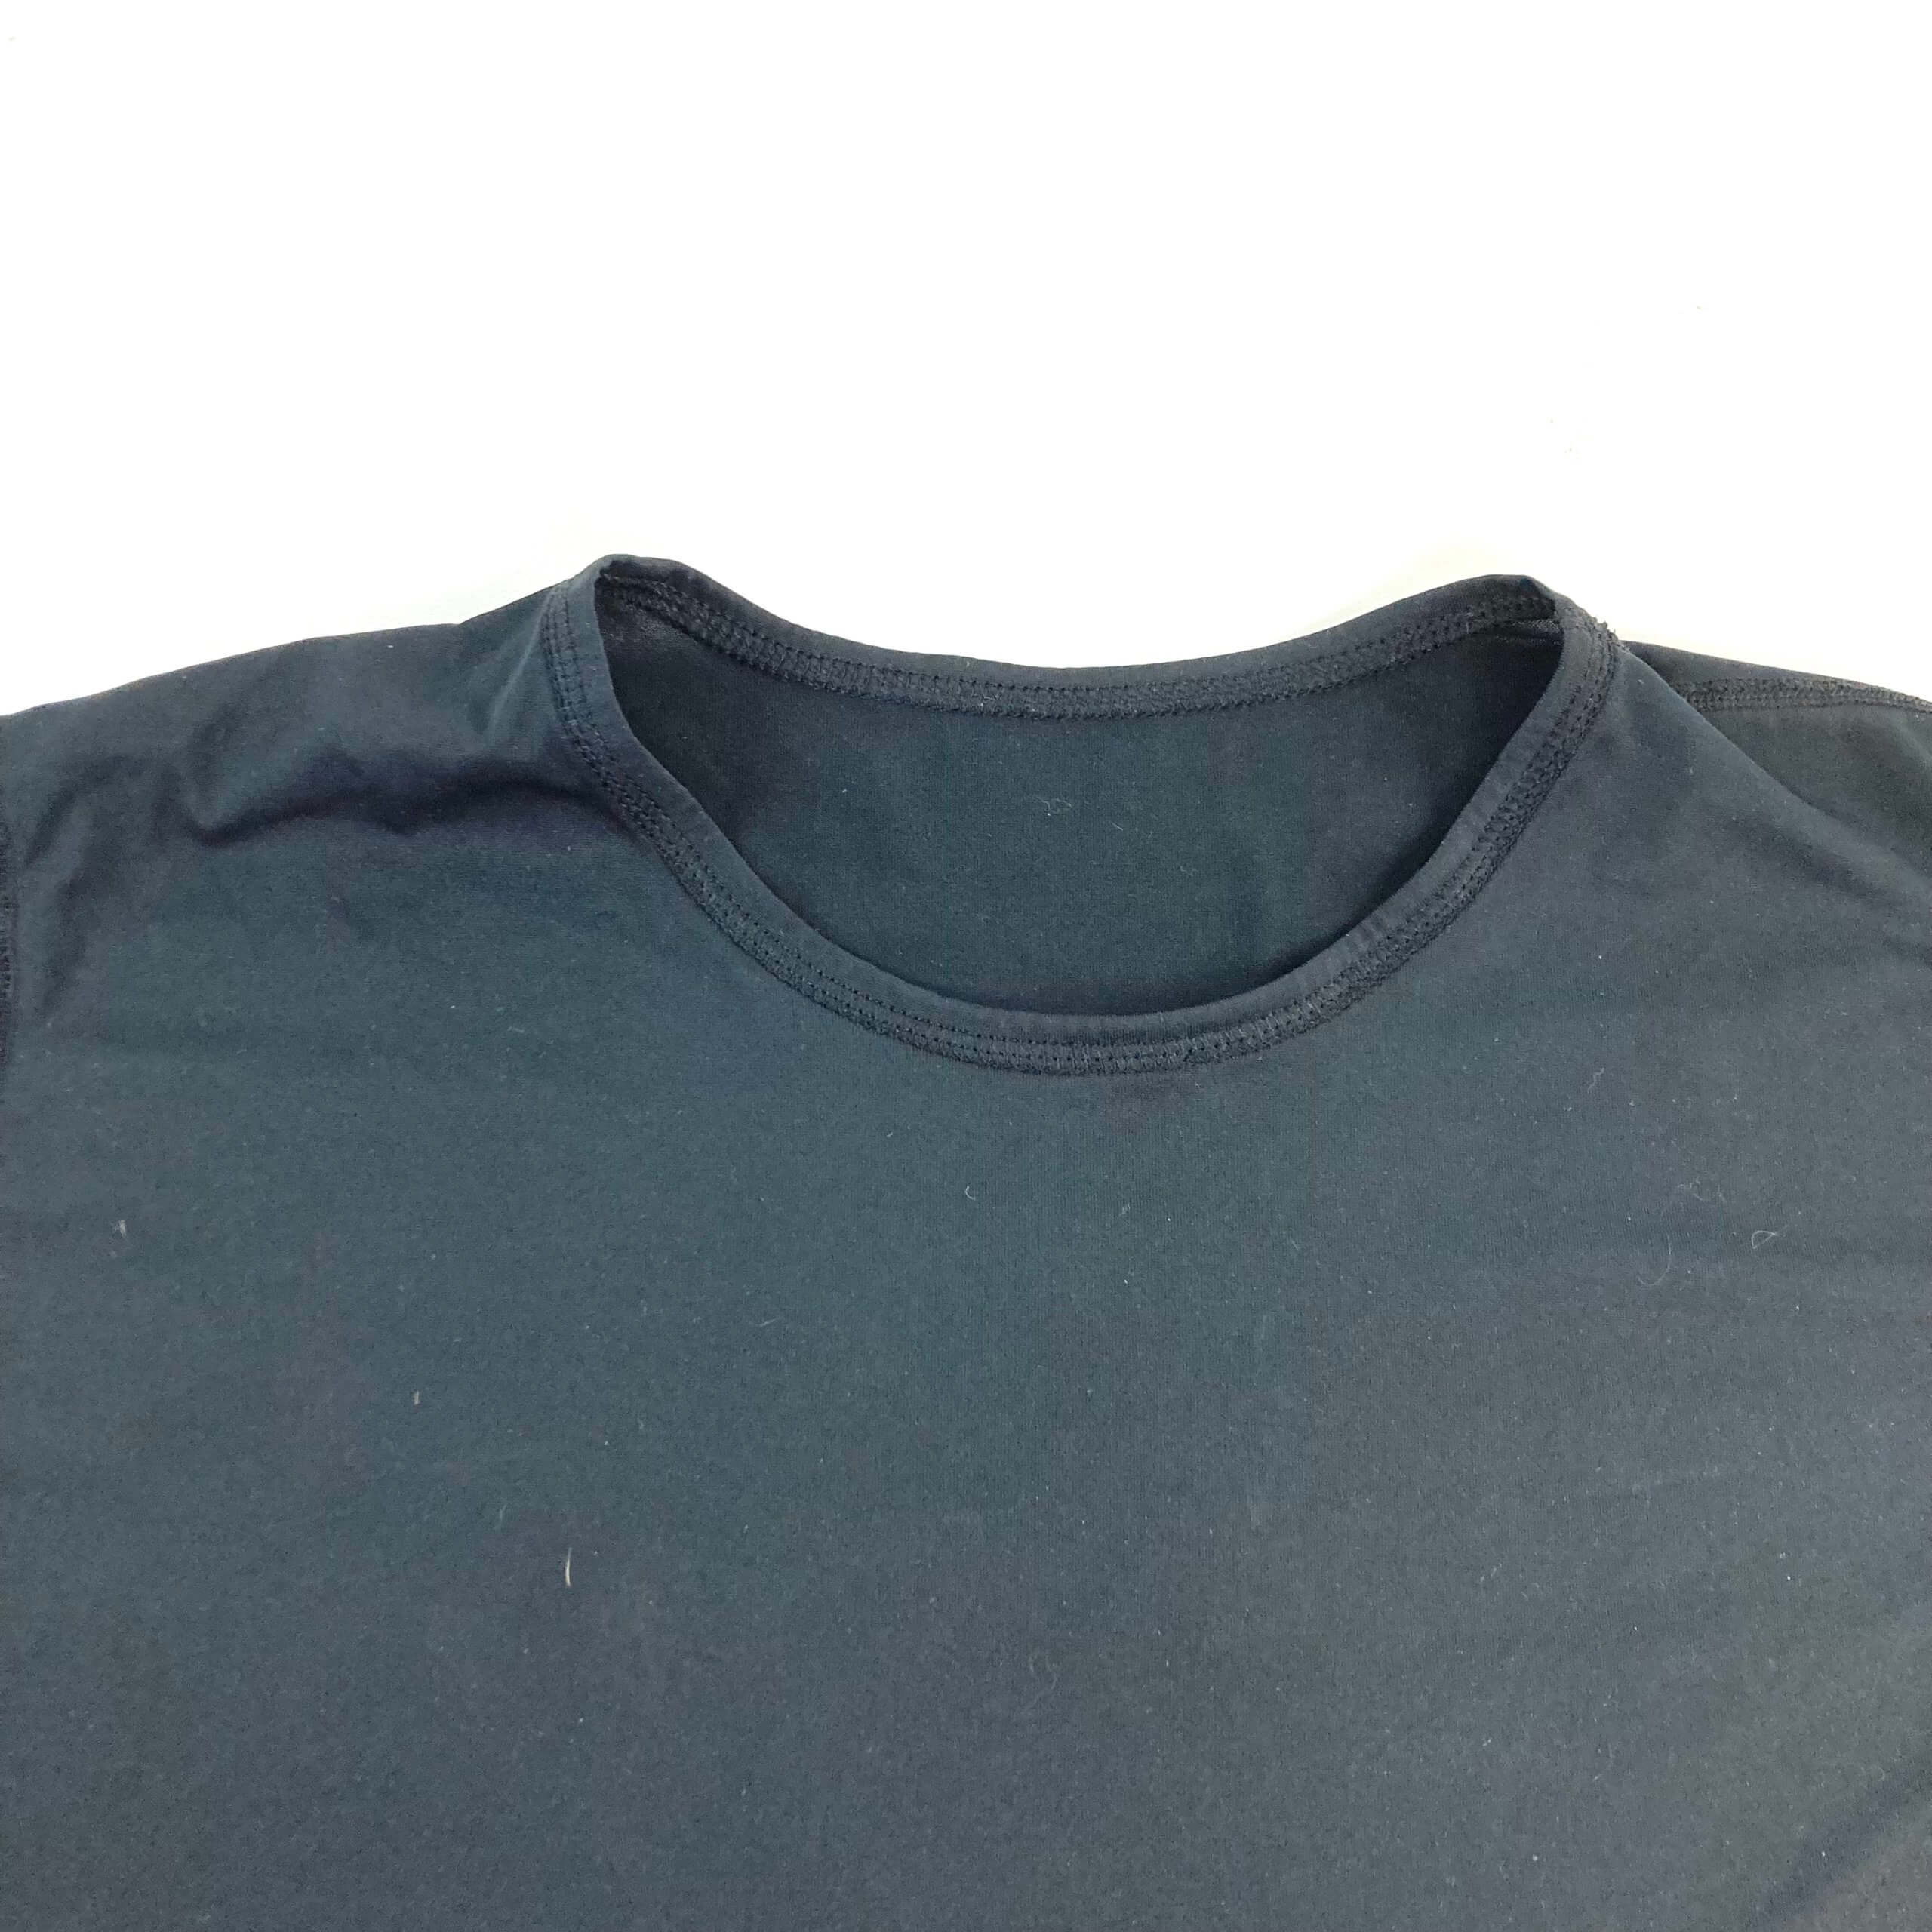 USGI Level 1 Base Layer Undershirt, Black [Genuine Army Issue]